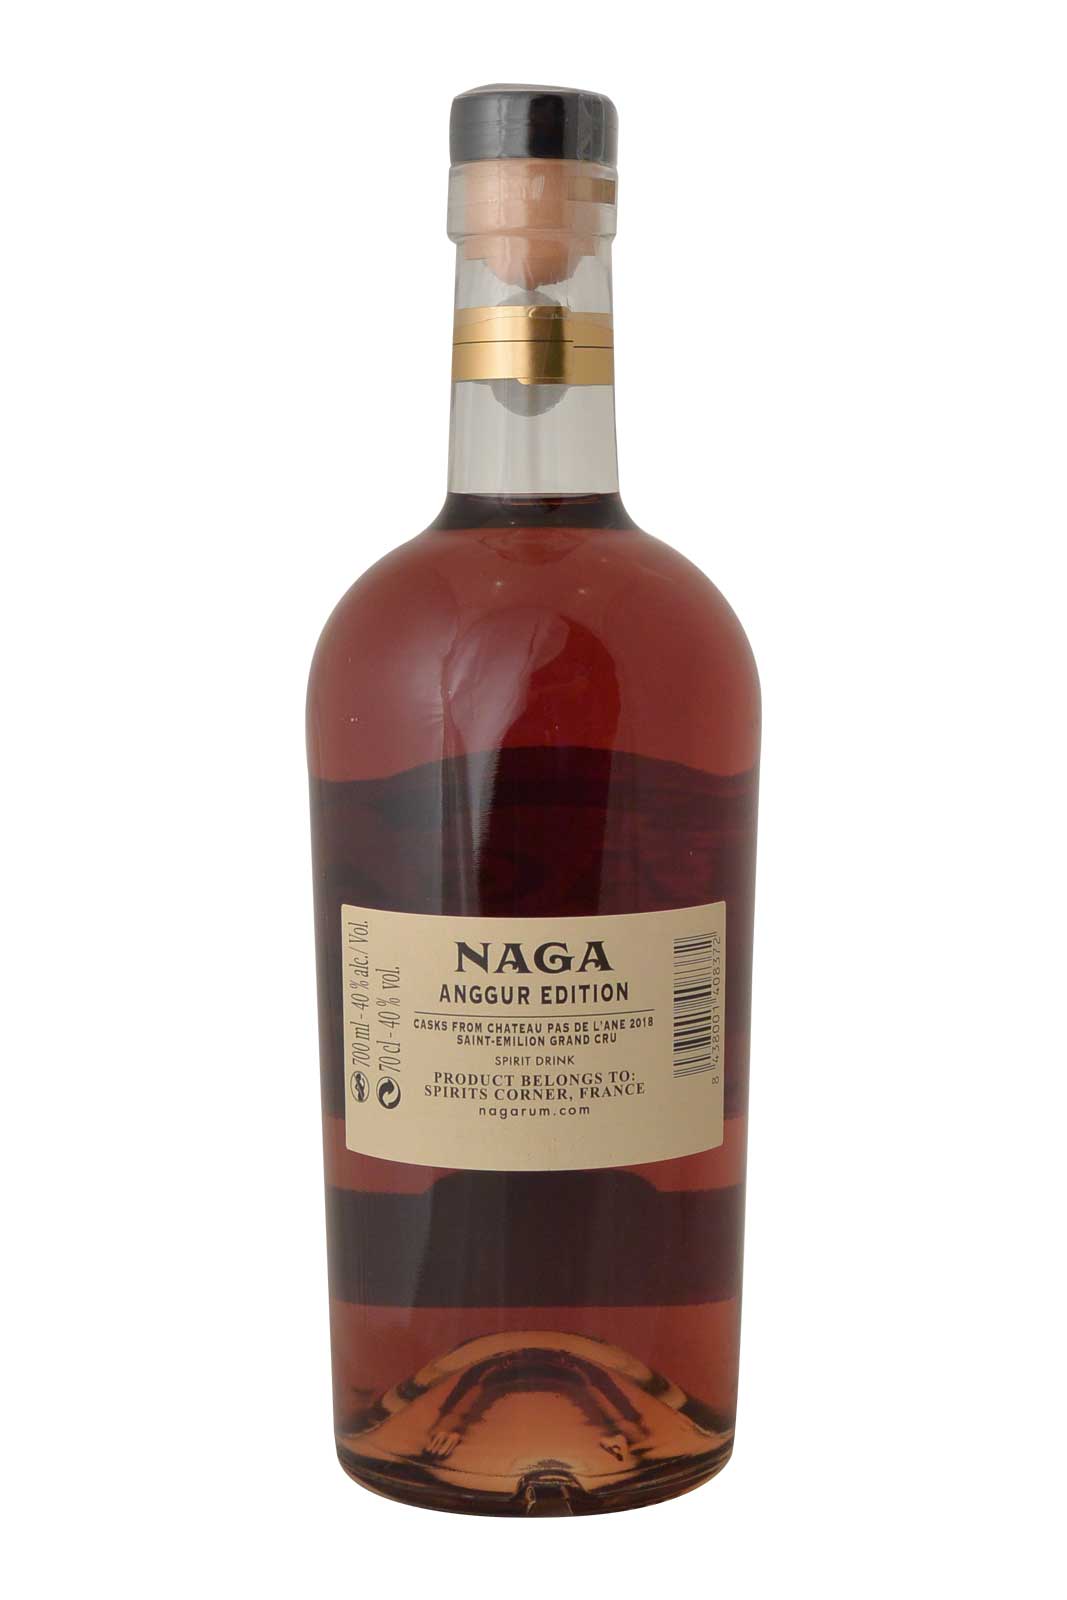 Naga Rum Red Wine Cask Finish